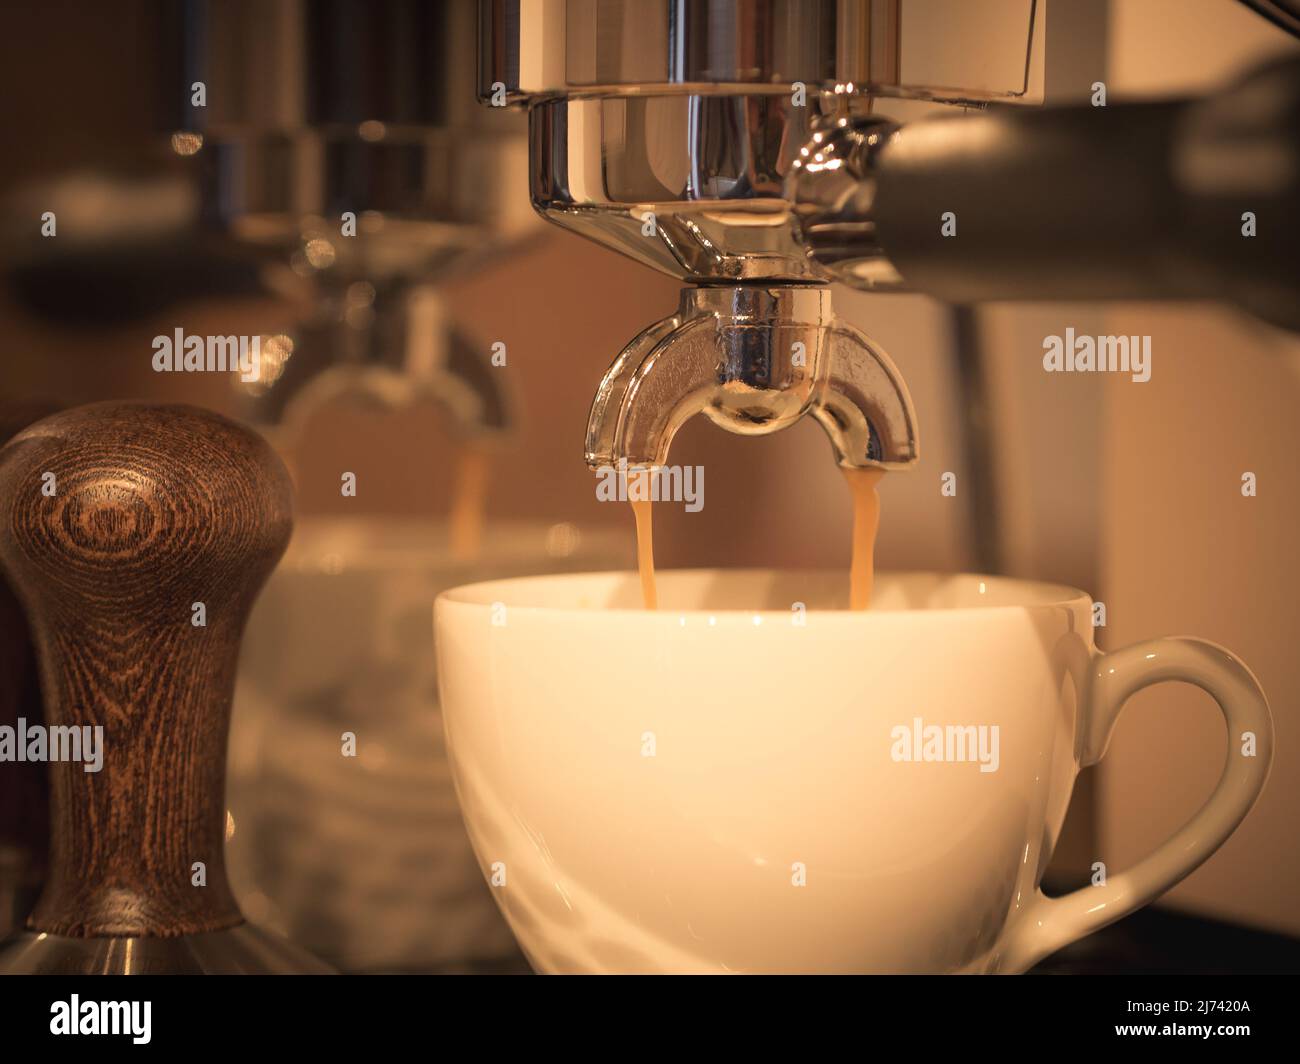 la photo montre la préparation de l'espresso, une bonne crème pour un espresso parfait Banque D'Images